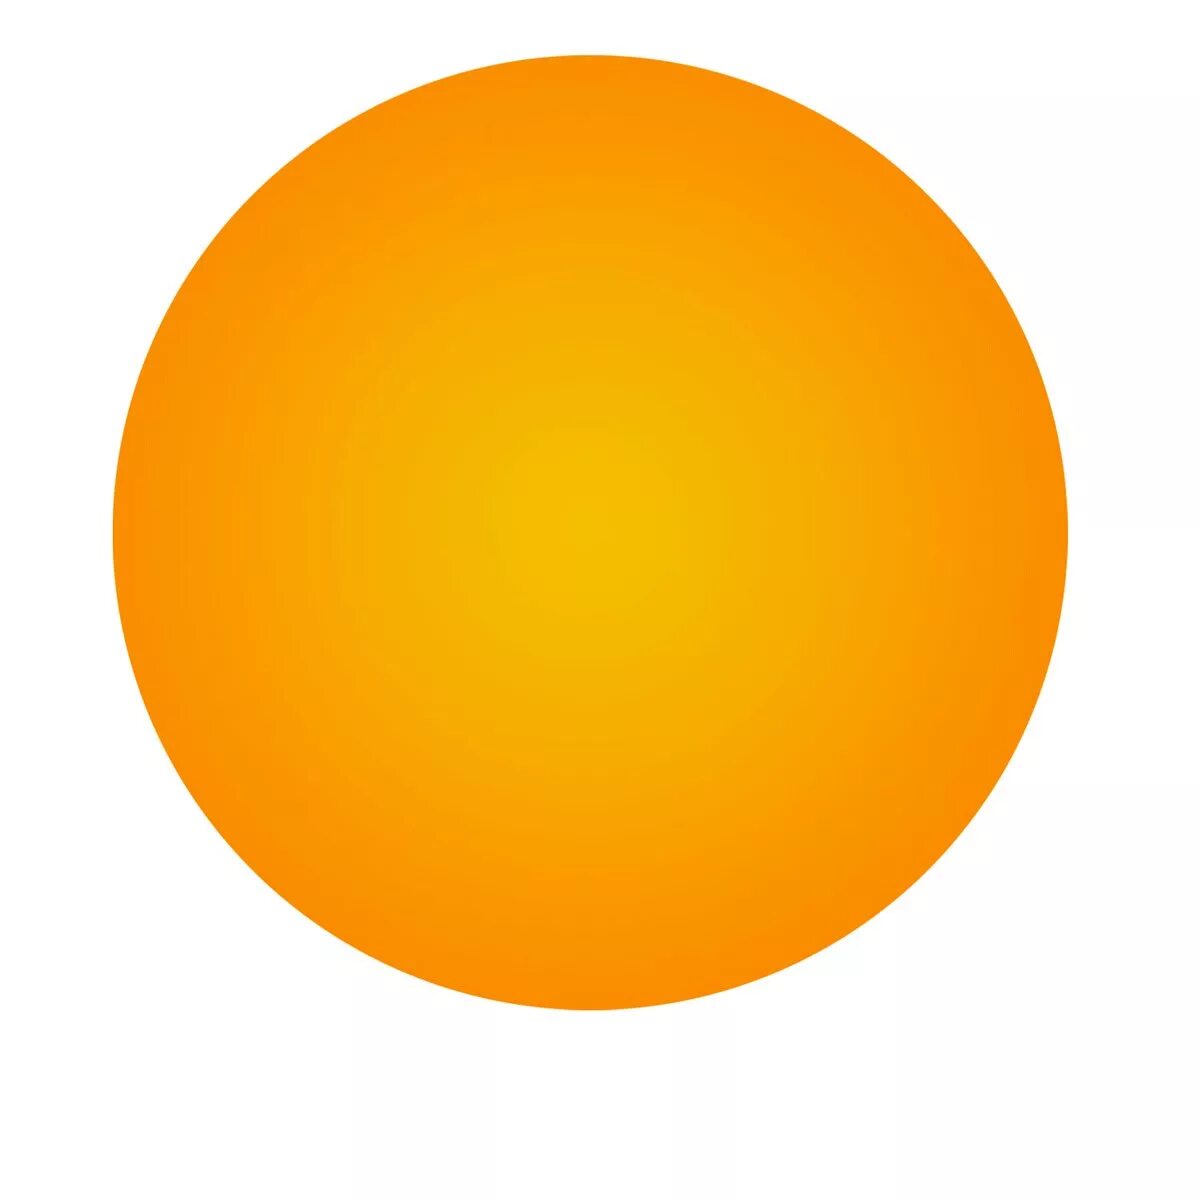 Круг на прозрачном фоне картинки для детей. Оранжевый круг. Оранжевый кружок. Оранжевый круг на прозрачном фоне. Оранжевые кружочки.